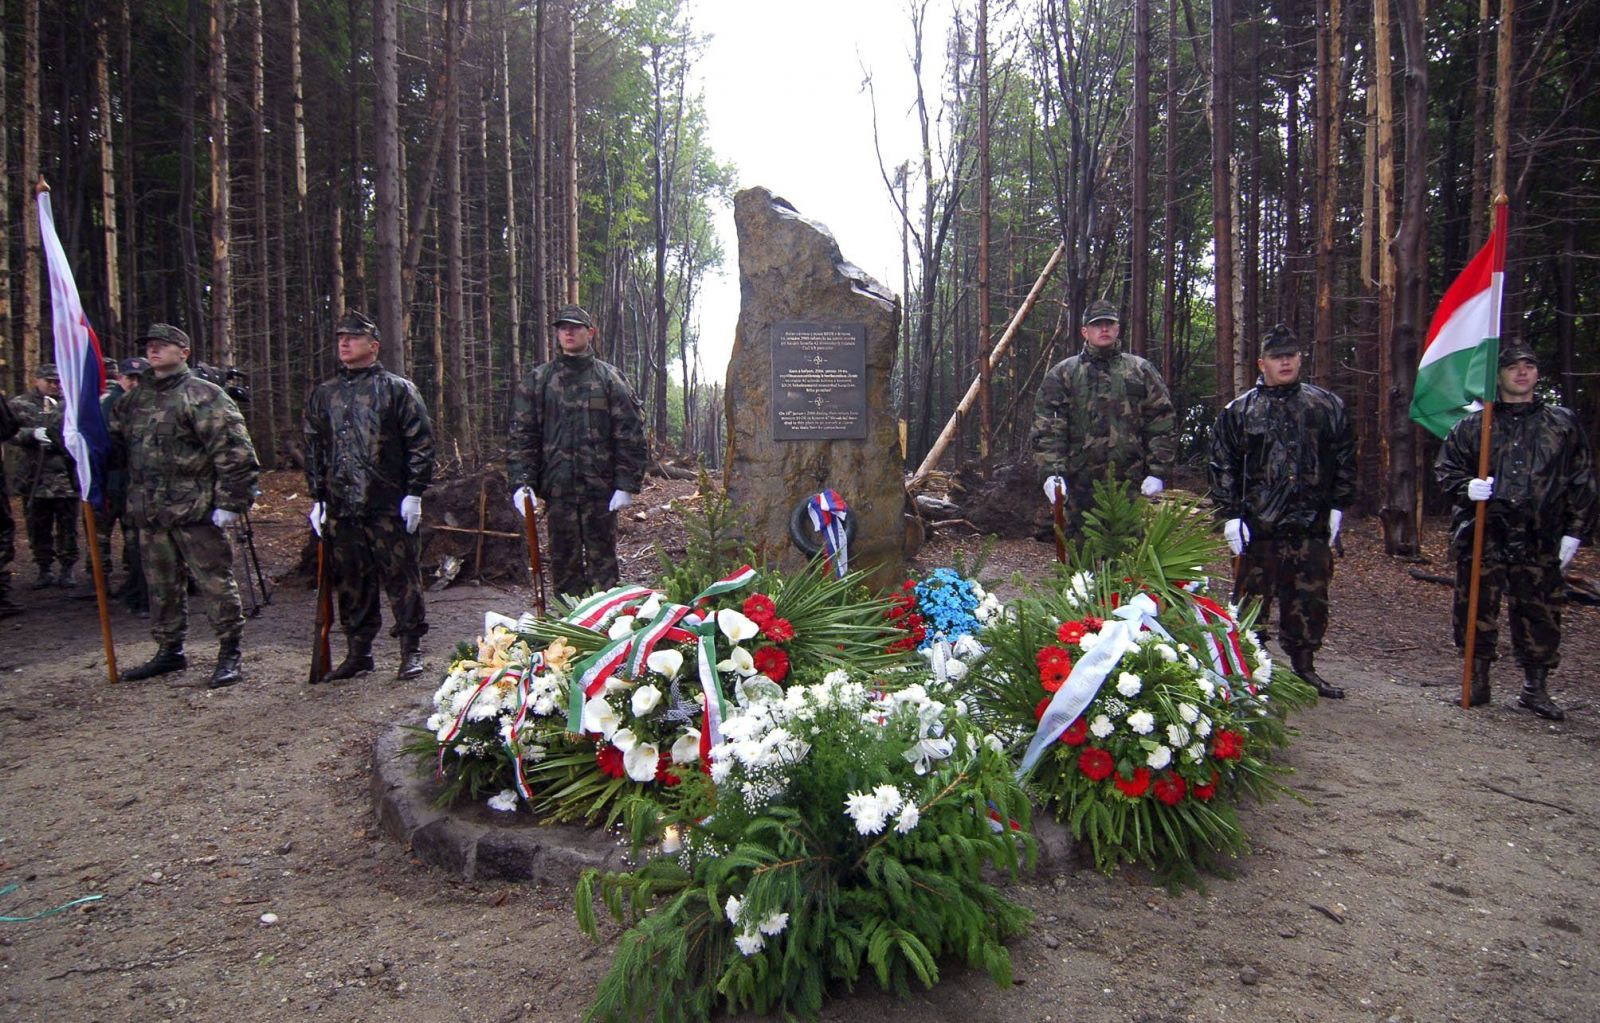 Pred 15. rokmi sa odohrala najväčšia letecká katastrofa v histórii Slovenska. Pri návrate domov zahynulo 42 vojakov